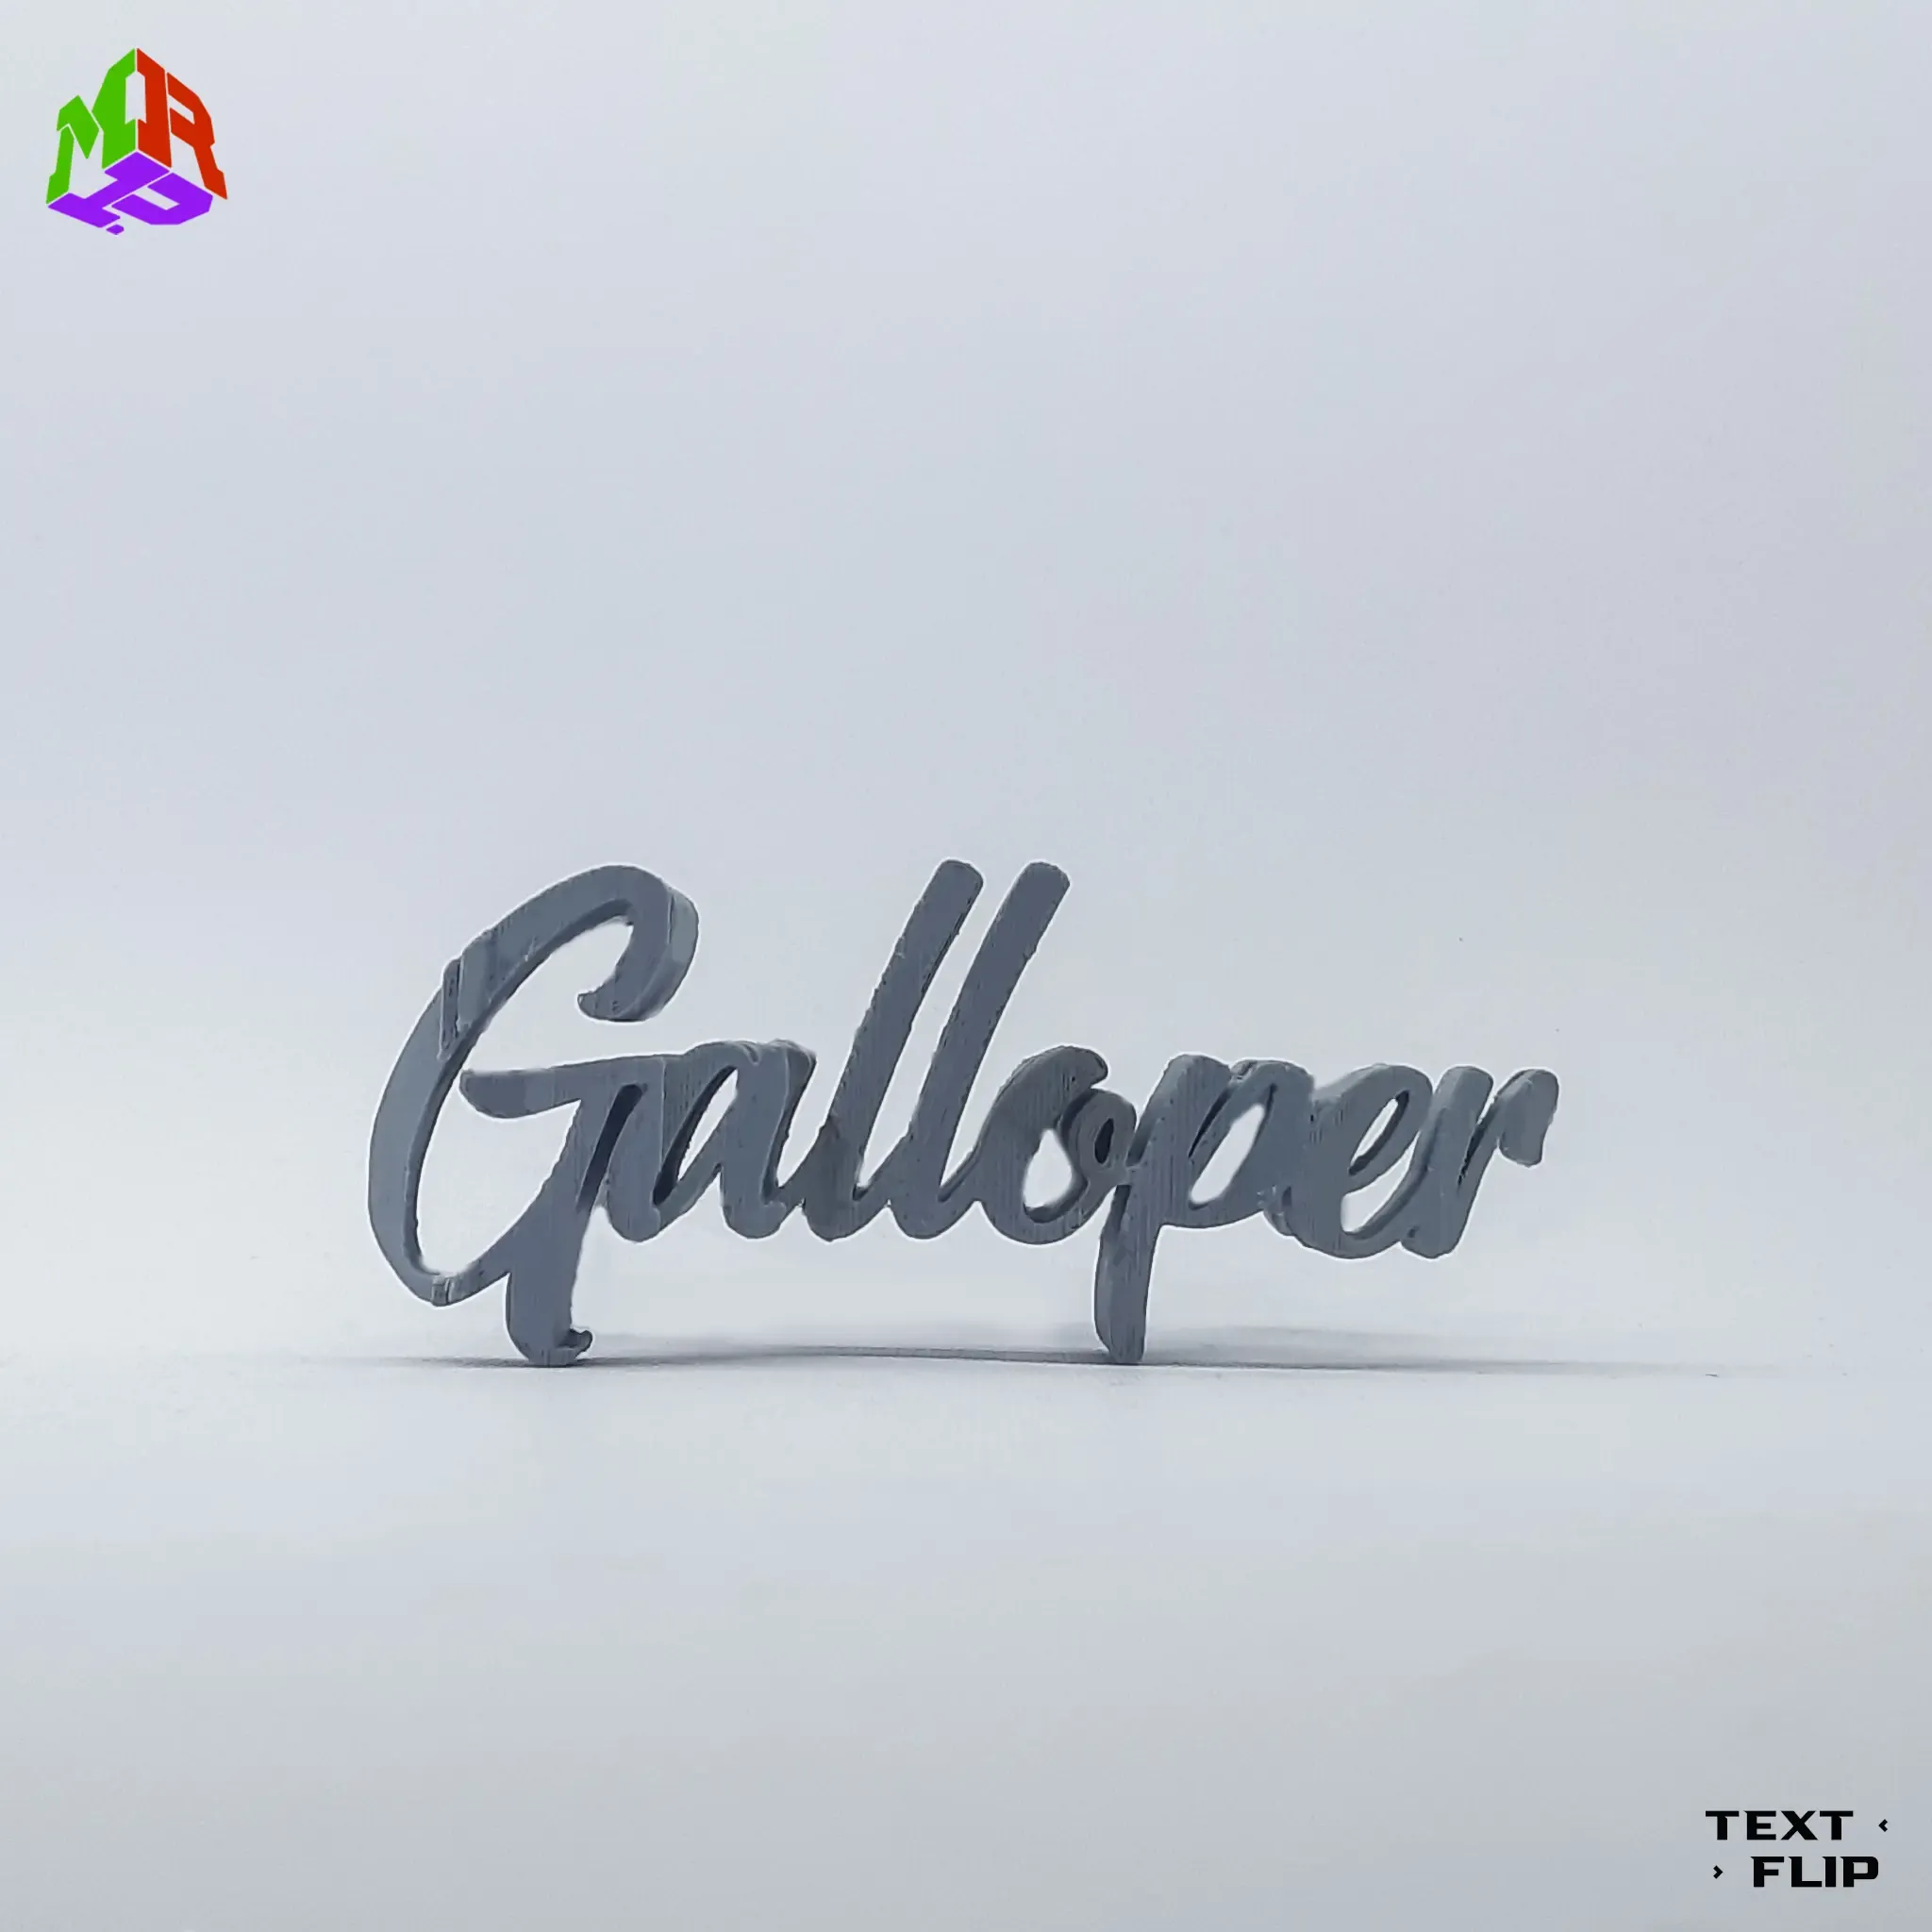 Text Flip - Galloper 2.0